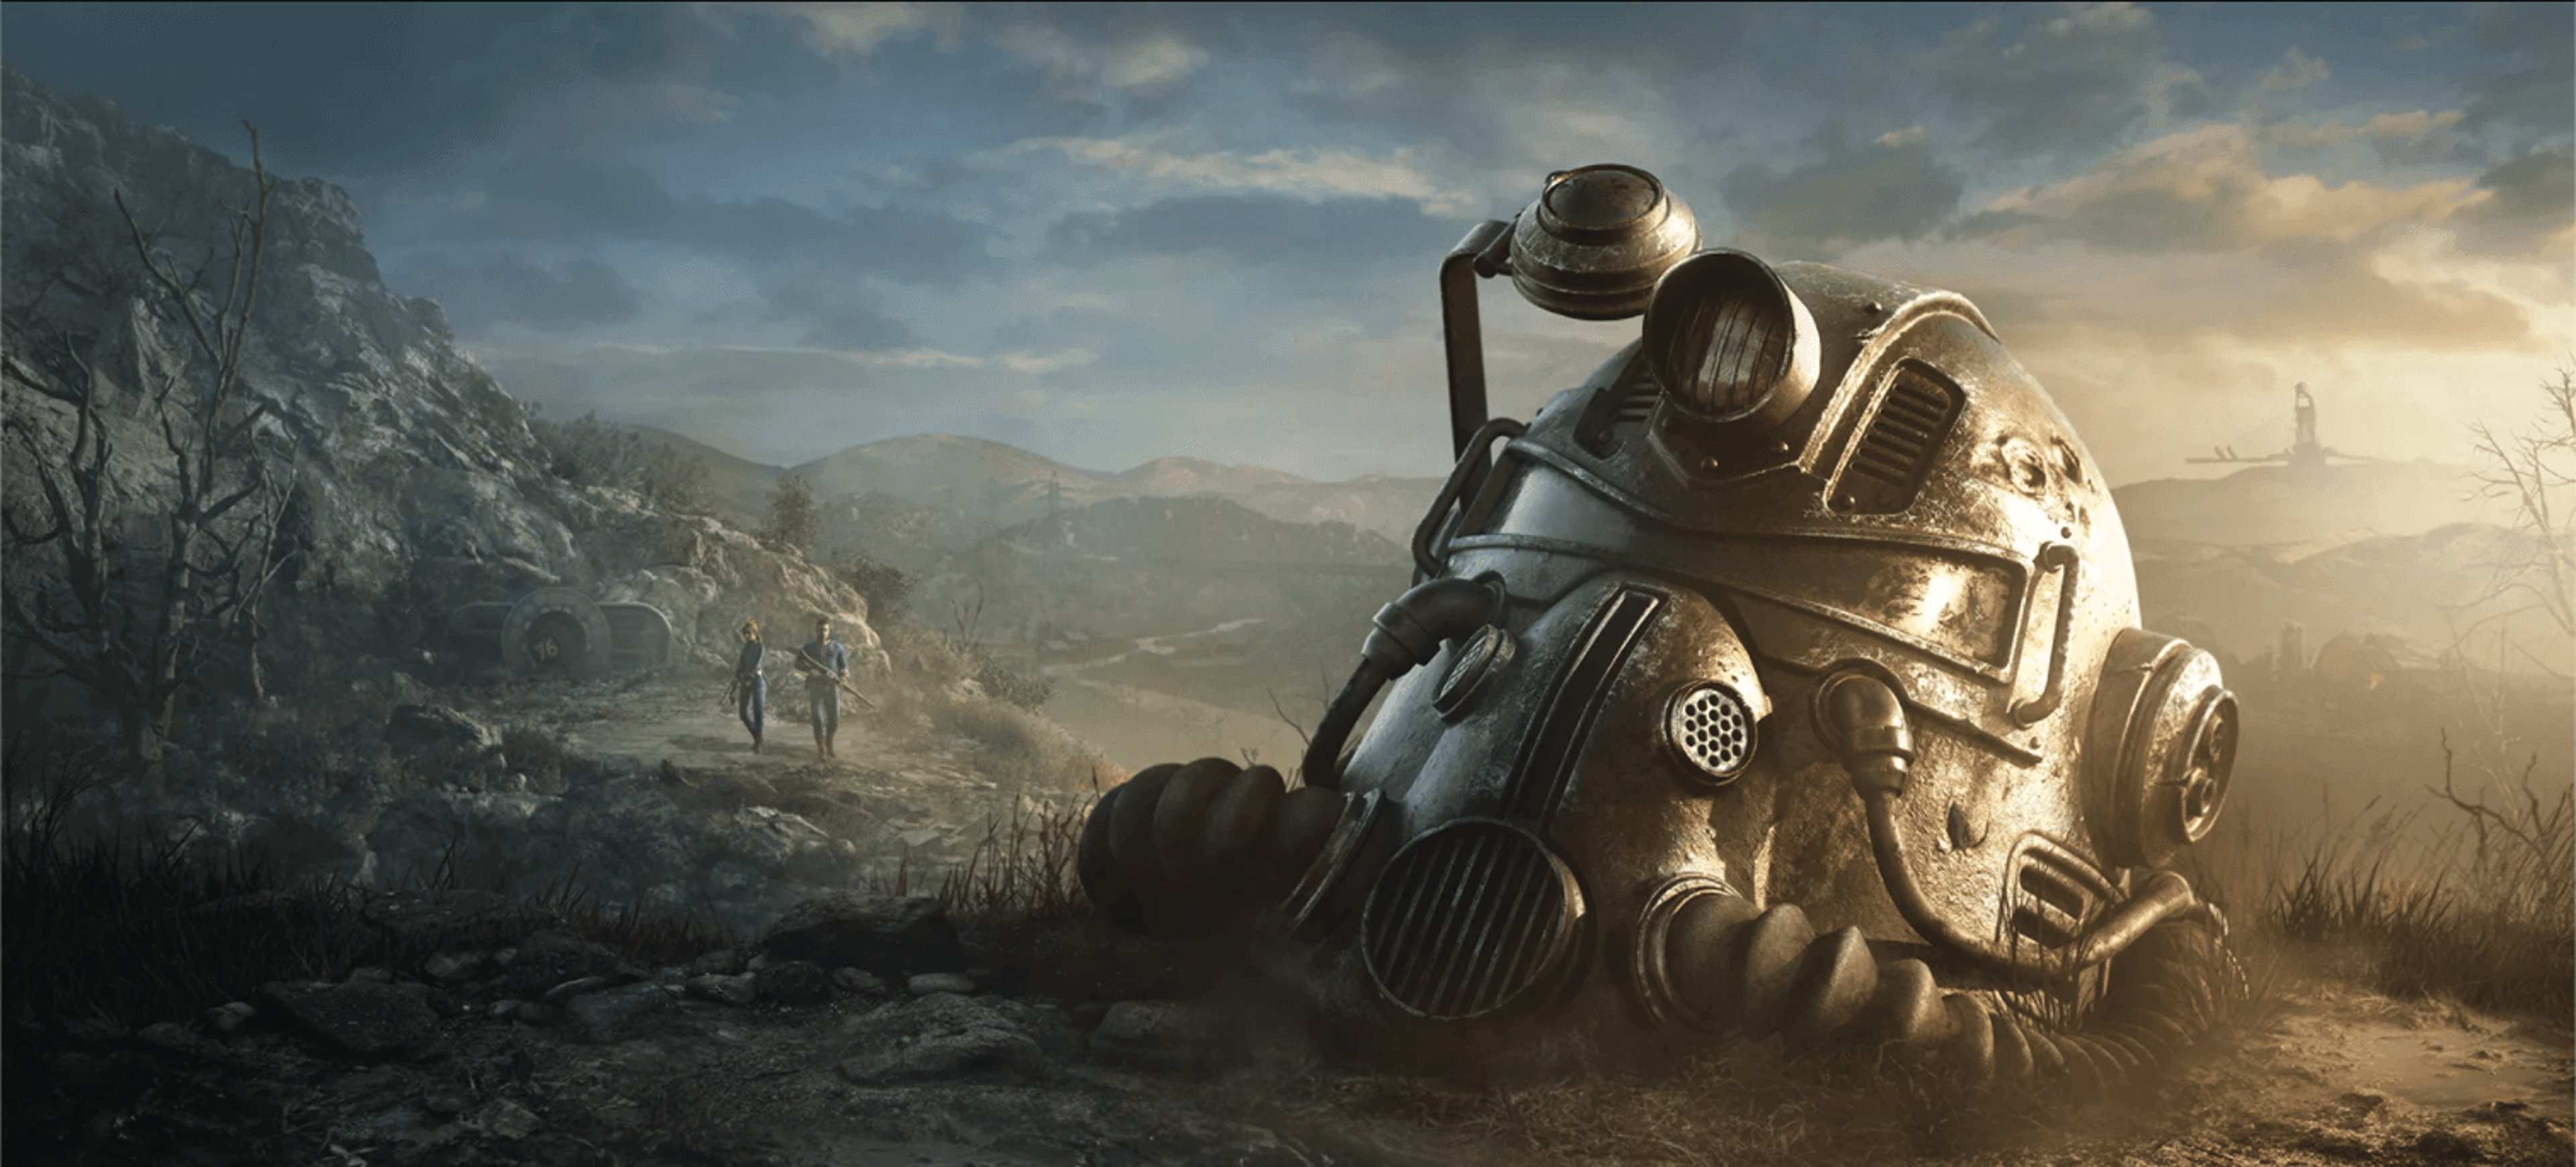 Fallout 76: ecco la roadmap 2020 con tutti i contenuti futuri